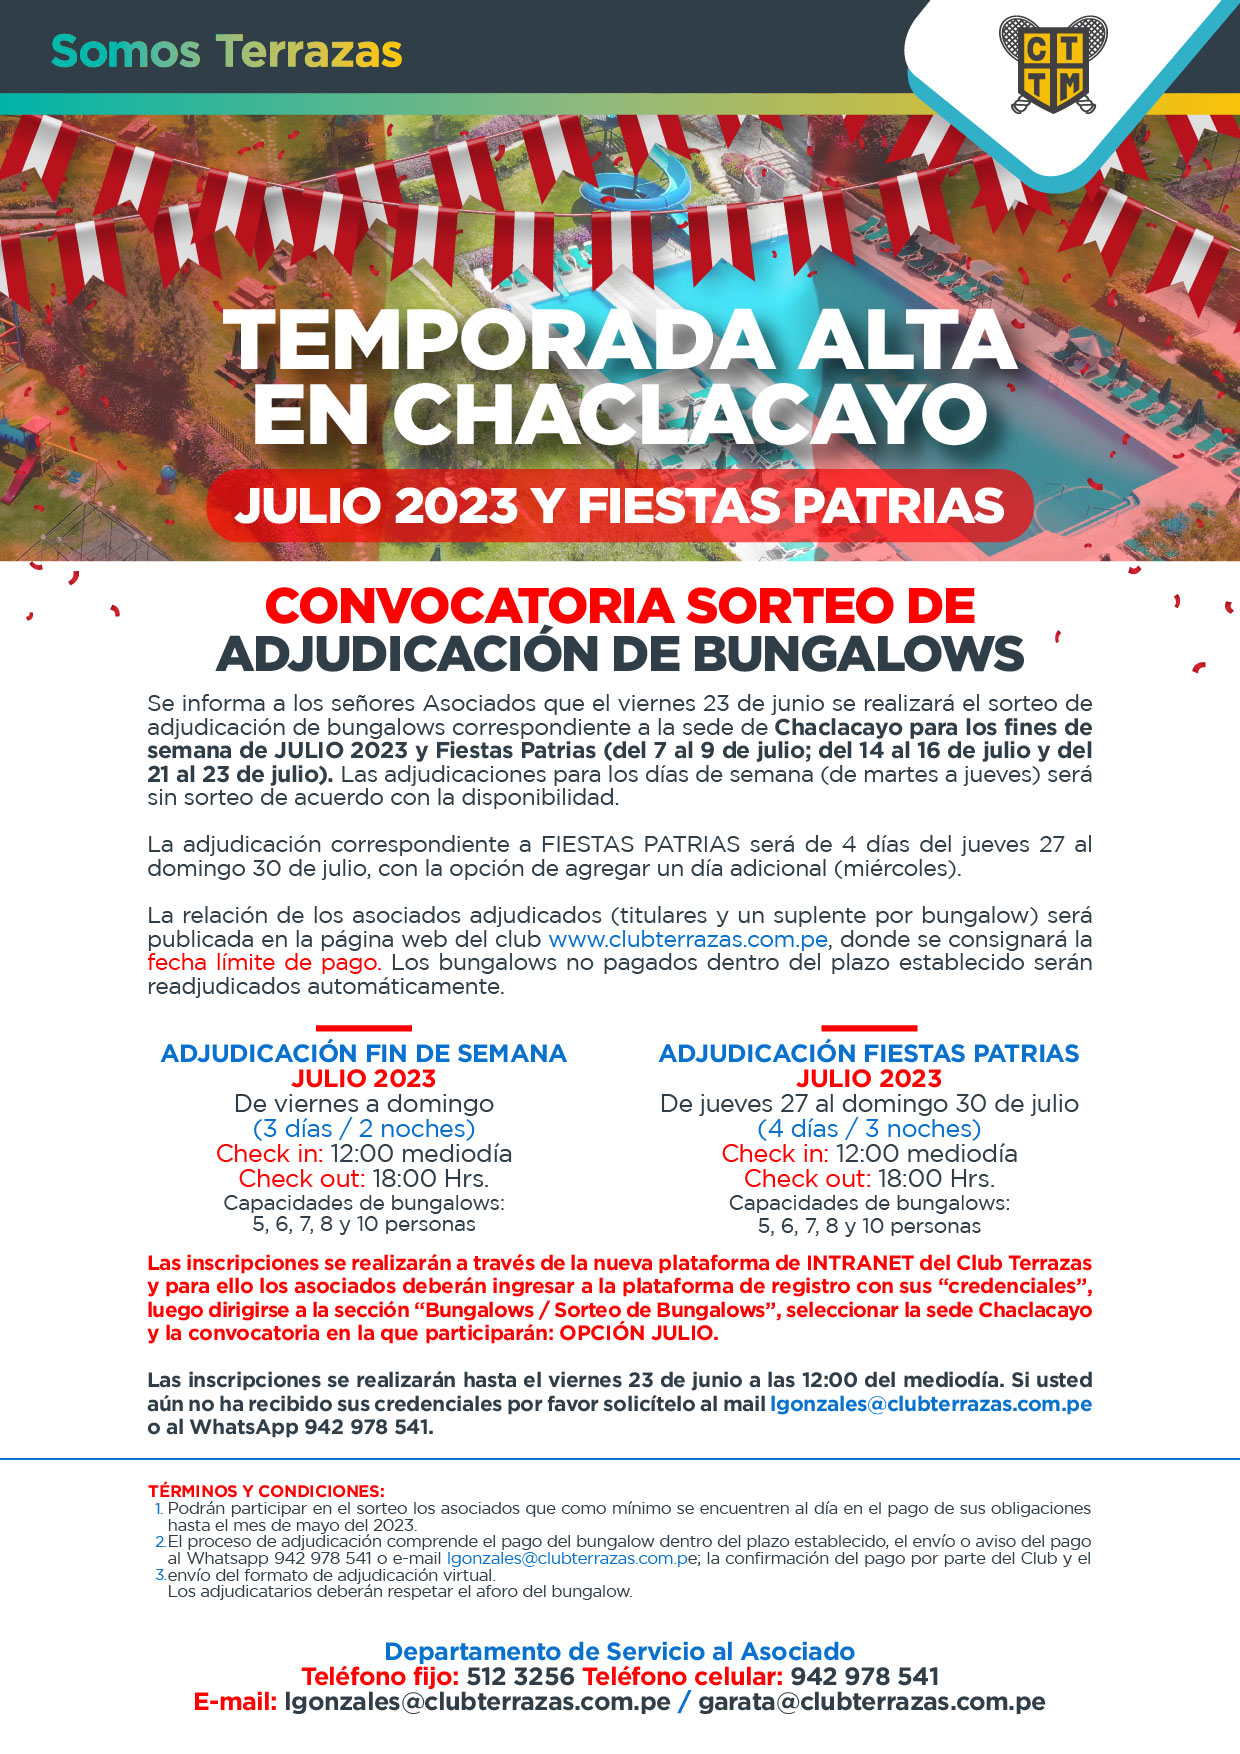 CONVOCATORIA A SORTEO DE ADJUDICACIÓN DE BUNGALOWS - JULIO 2023